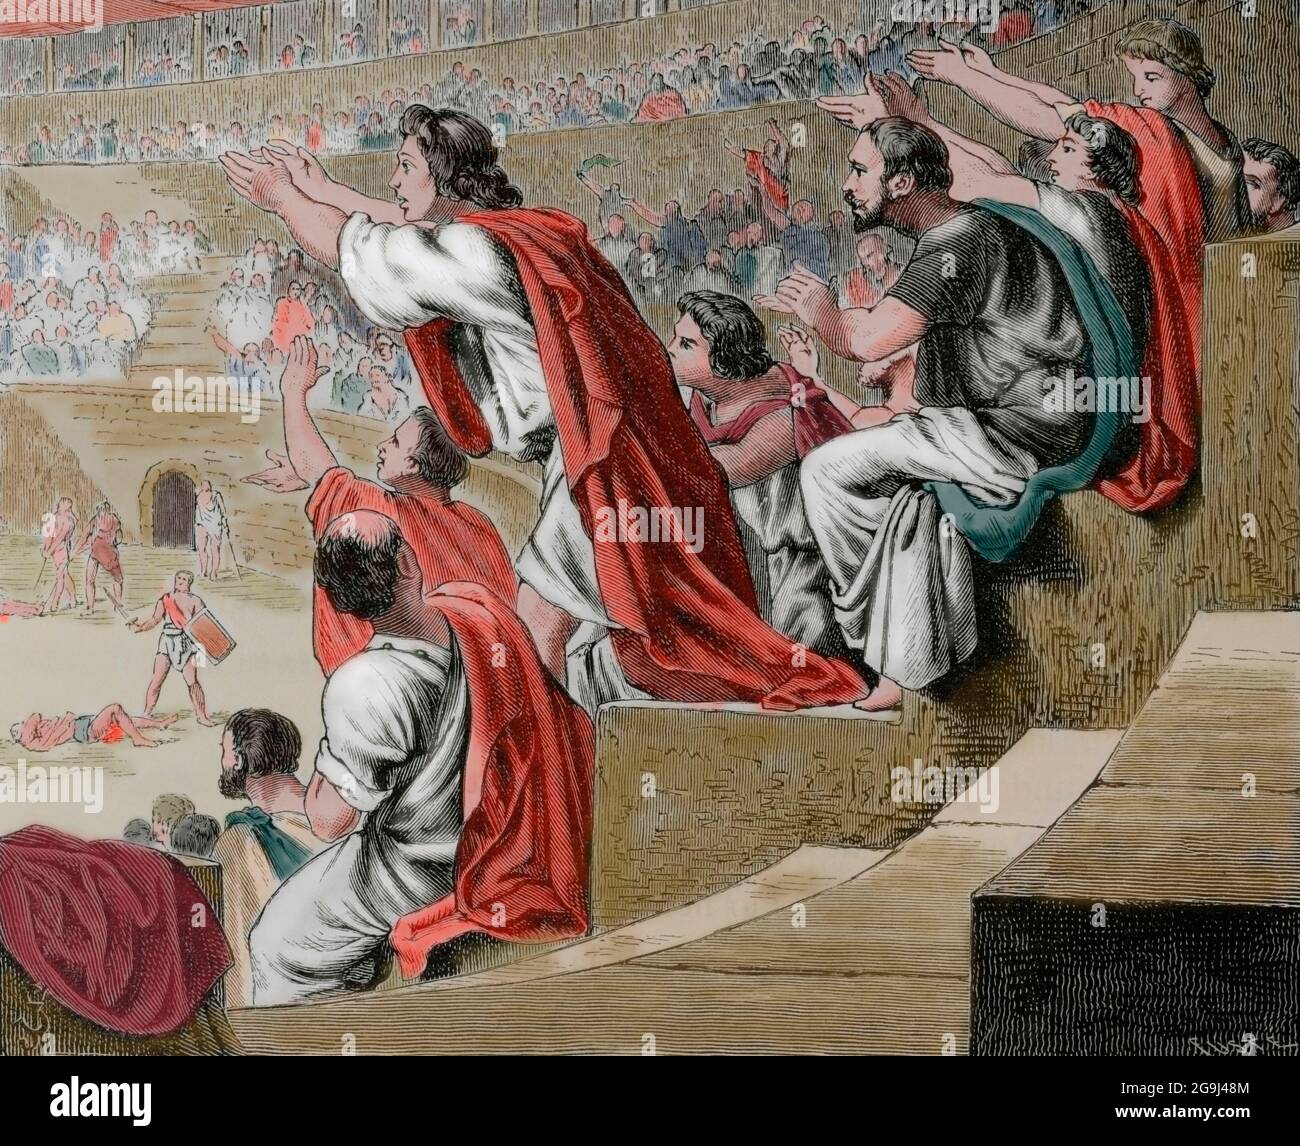 Impero Romano. Spettatori durante una lotta gladiatore. Incisione. Colorazione successiva. La Civilizacion (la civiltà), volume II, 1881. Foto Stock